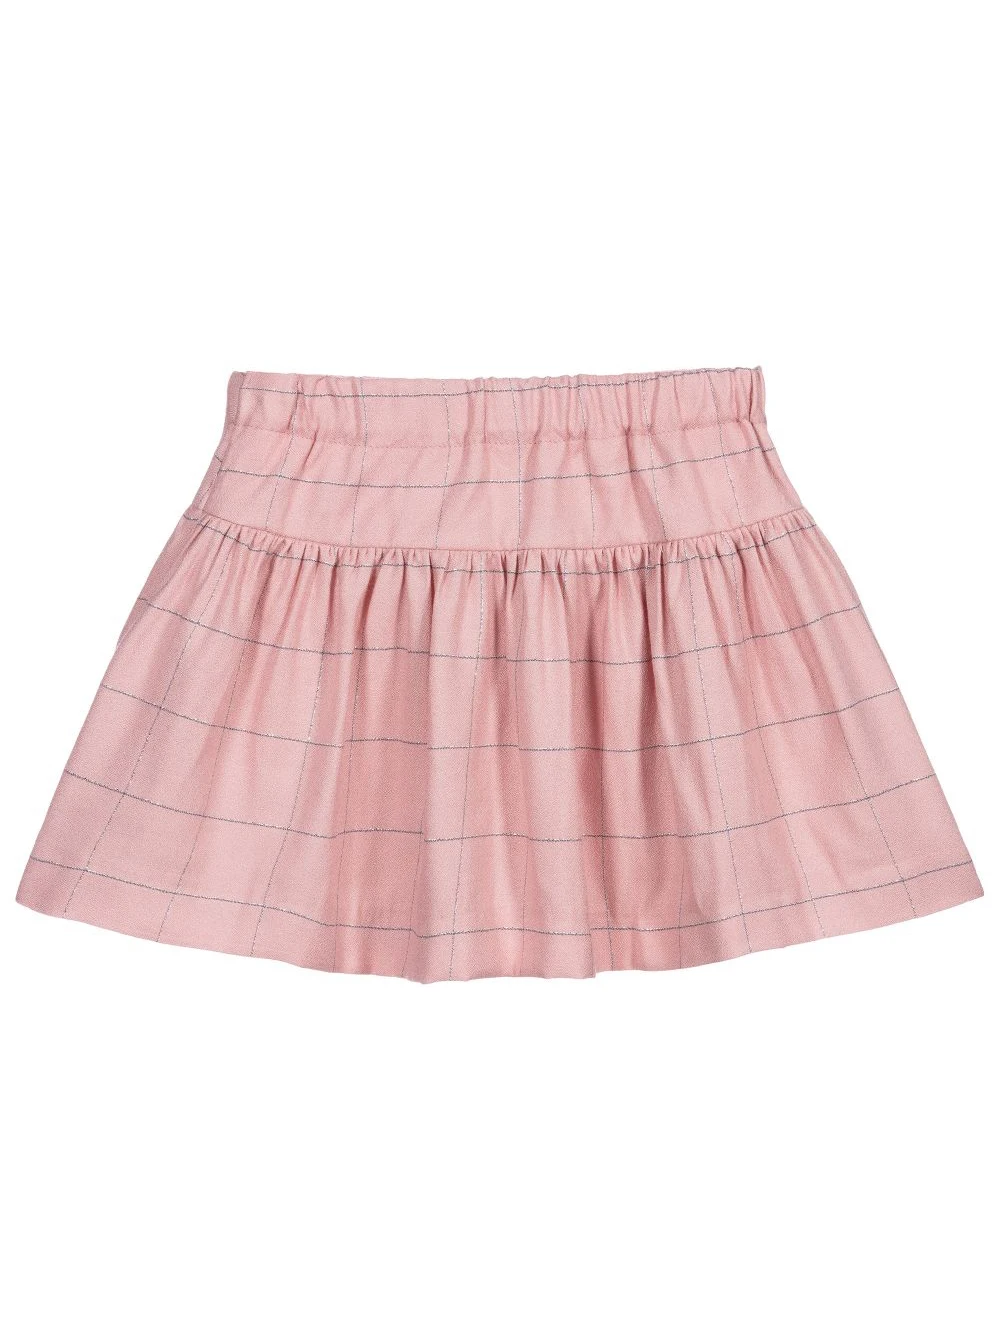 latest skirt design children clothing pink plaid pleats baby girl skirt